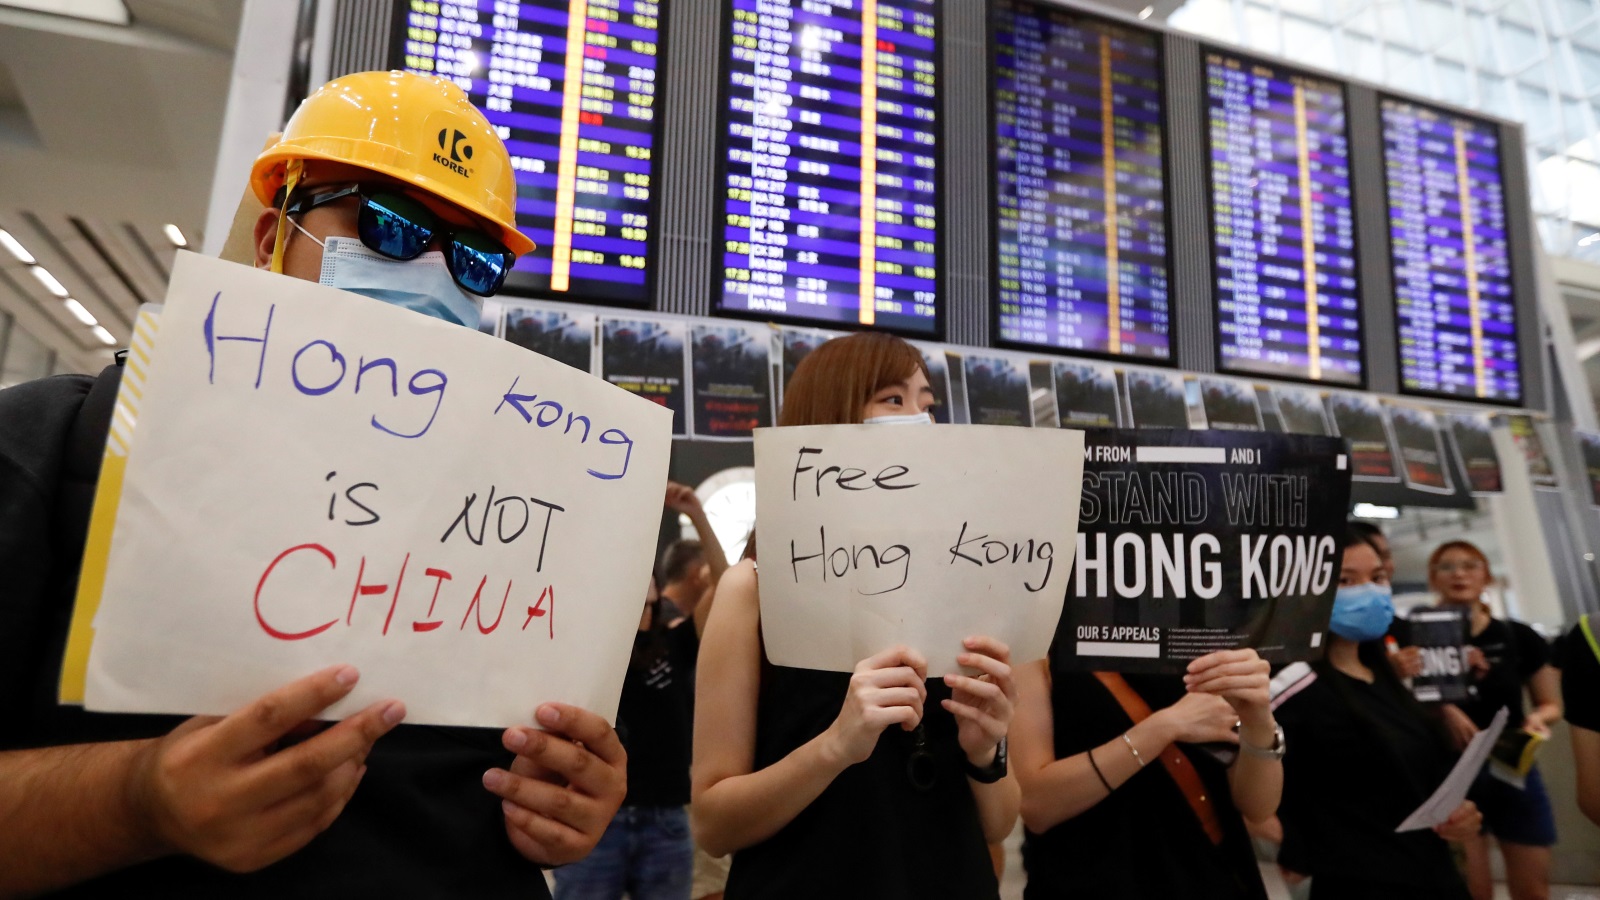 واصل مئات المحتجّين اعتصاما في مطار هونغ كونغ الدولي لليوم الثالث على التوالي (رويترز)